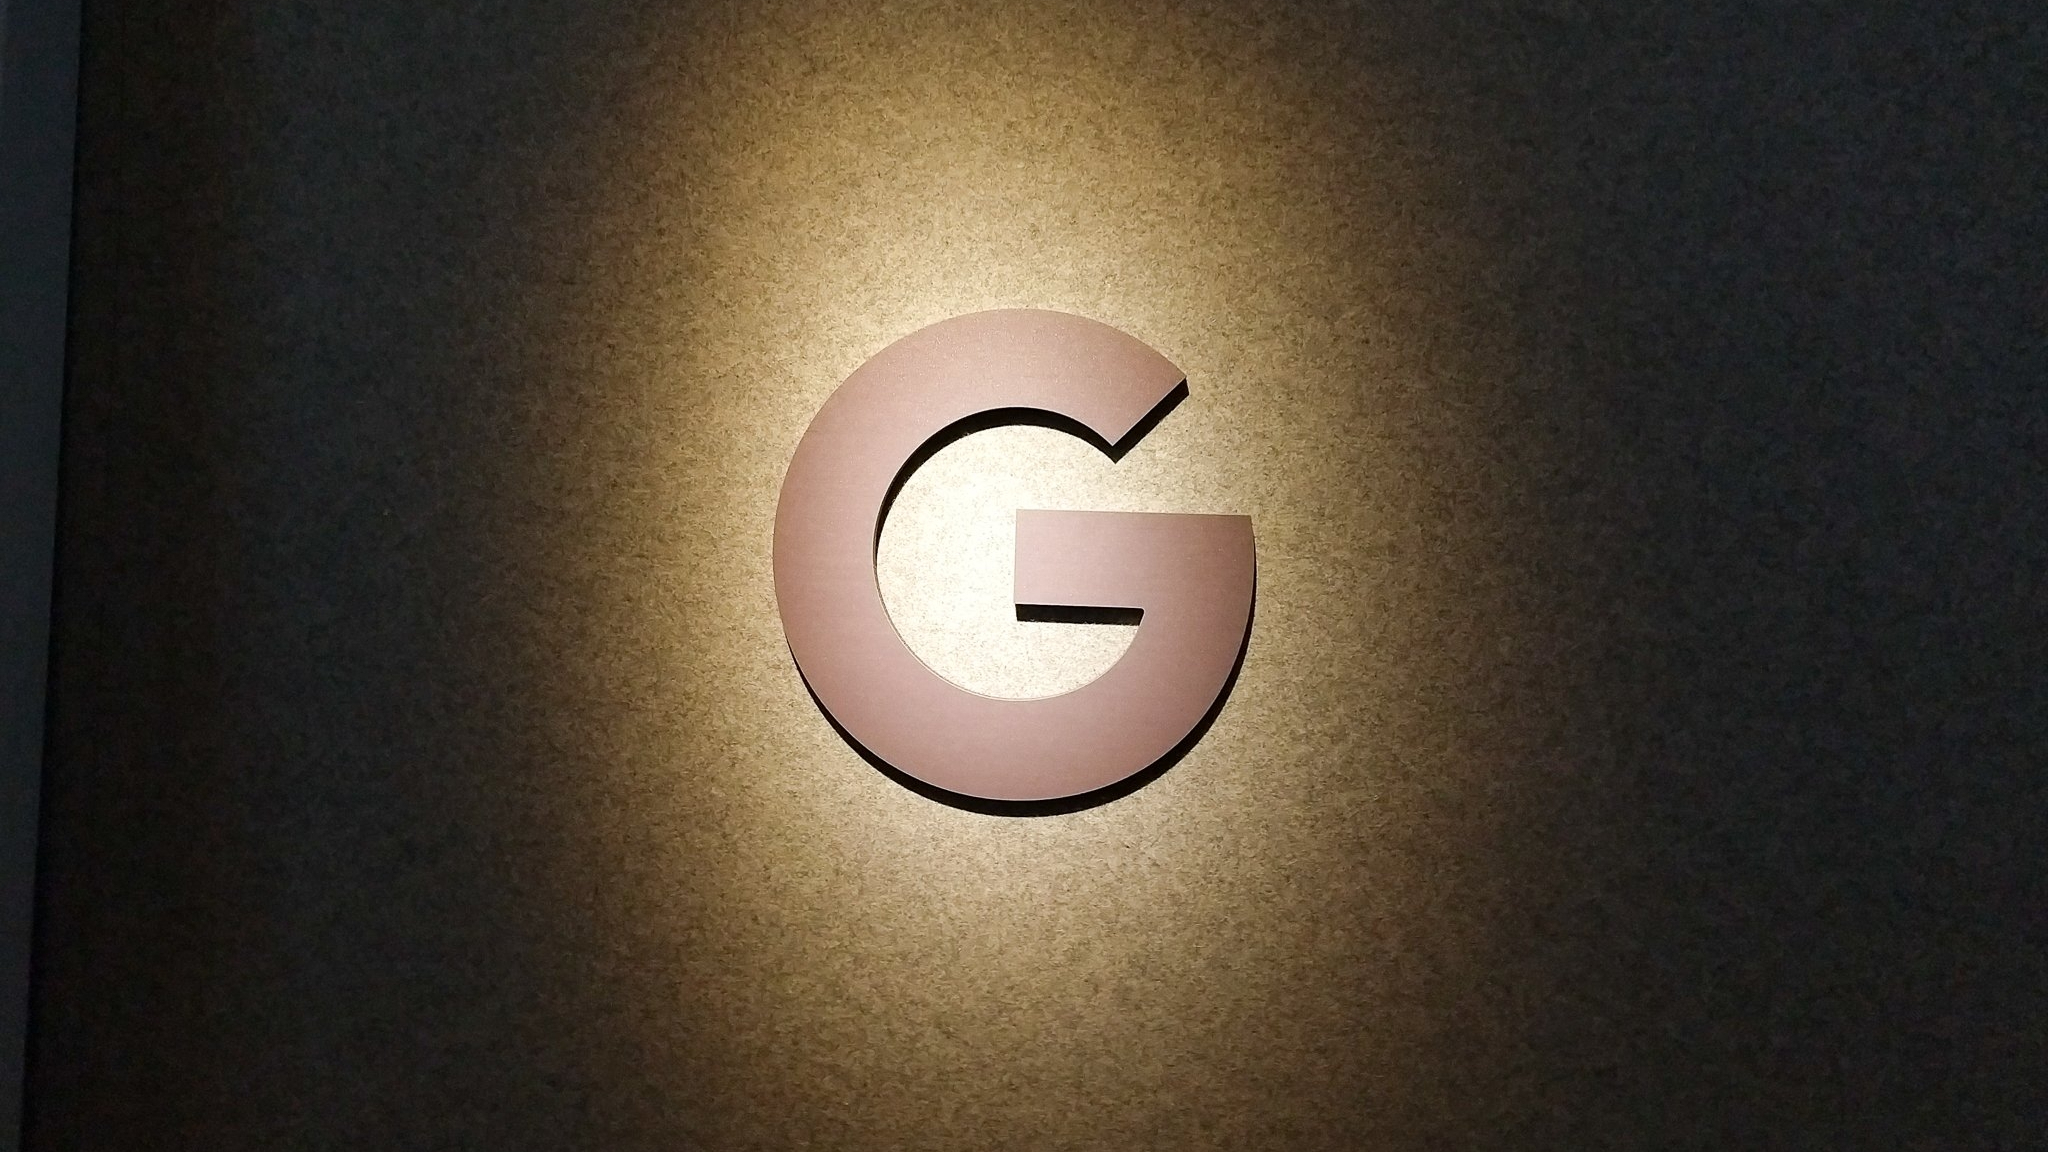 棕褐色阴影下的黑白 Google 徽标